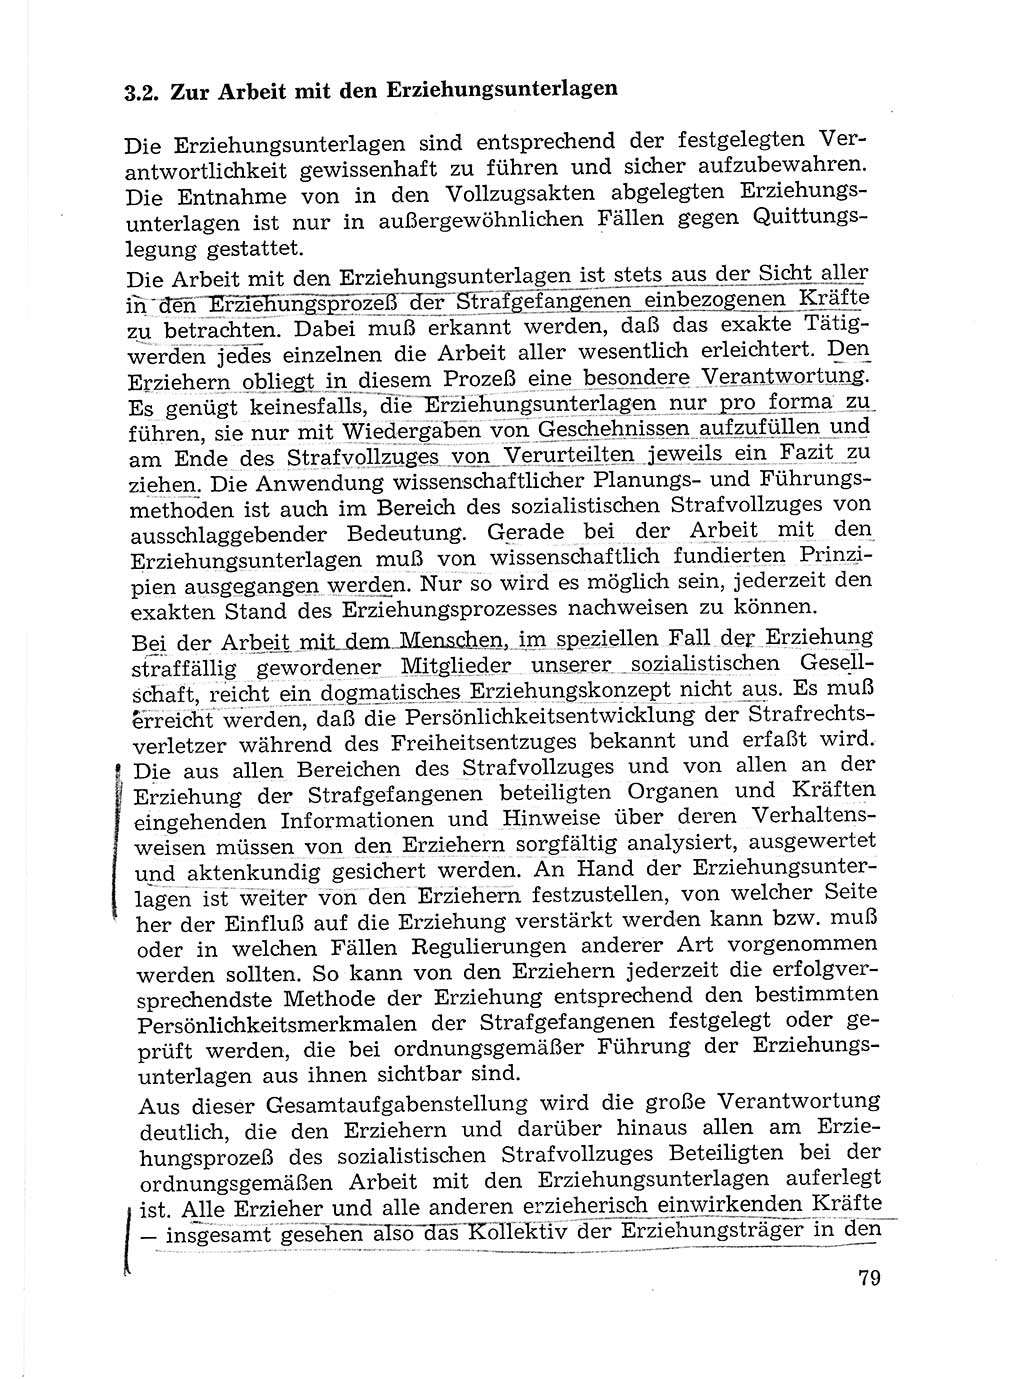 Sozialistischer Strafvollzug (SV) [Deutsche Demokratische Republik (DDR)] 1972, Seite 79 (Soz. SV DDR 1972, S. 79)